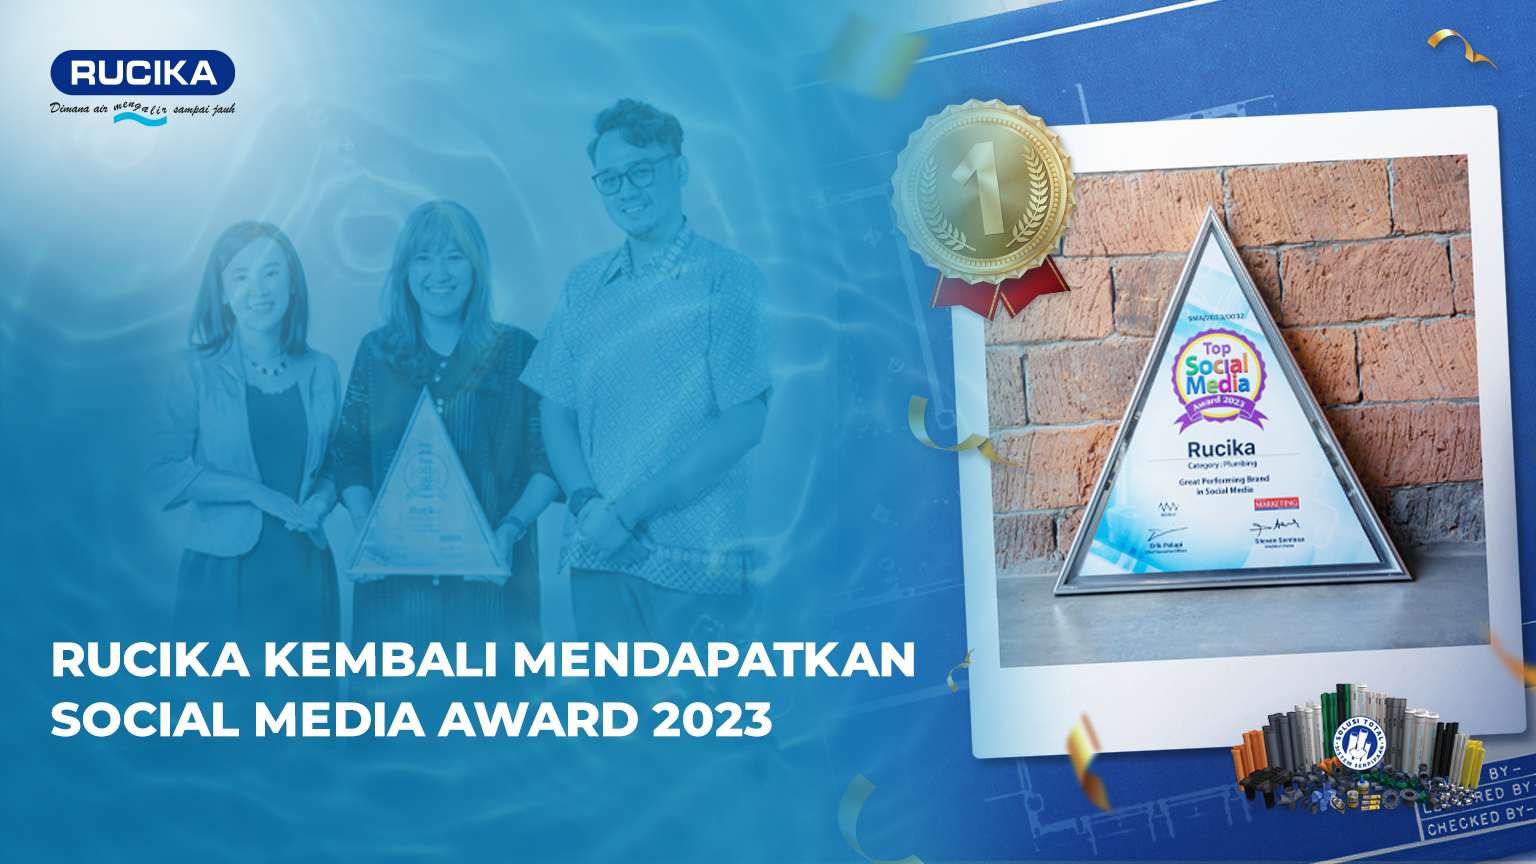 Rucika Kembali Mendapatkan Penghargaan Top Social Media Award 2023